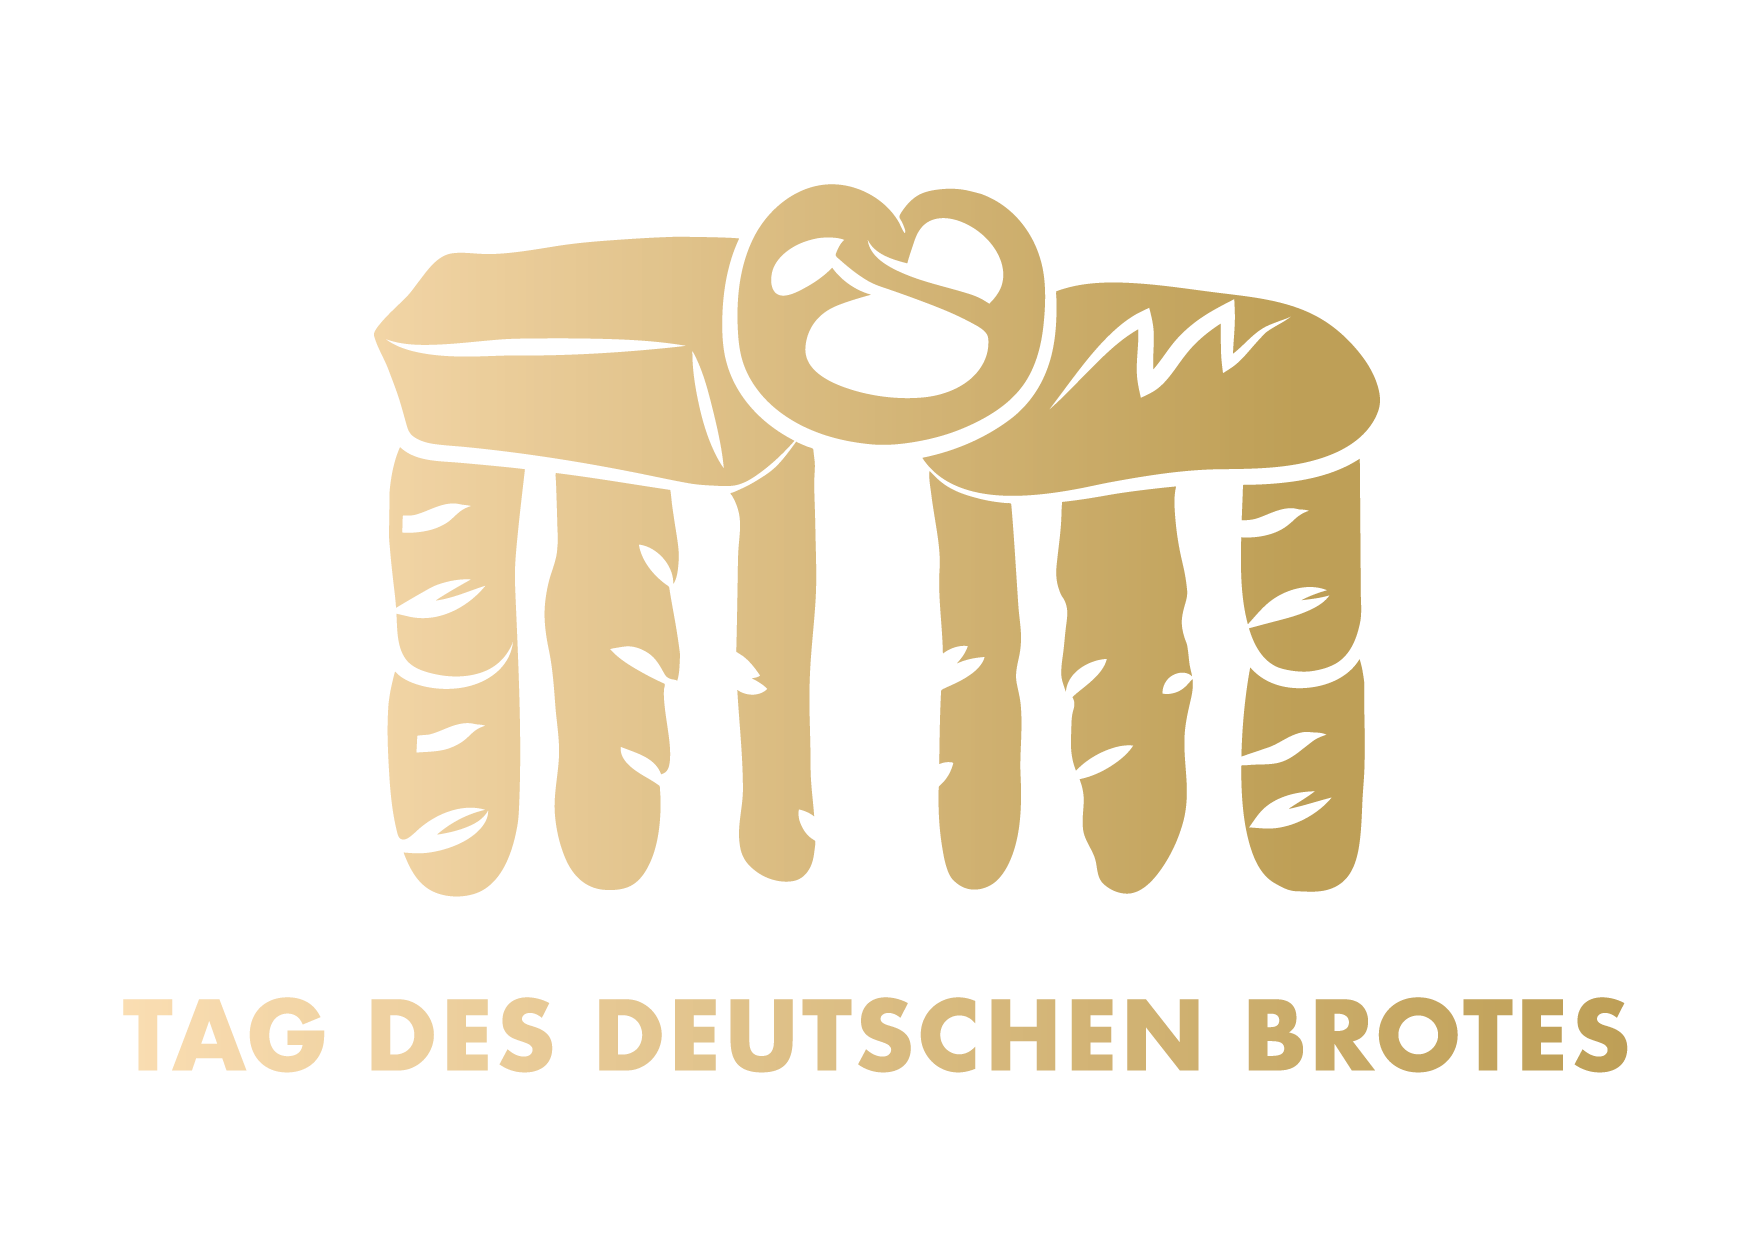 Deutschland feiert den Tag des Deutschen Brotes am 15. Mai 2018